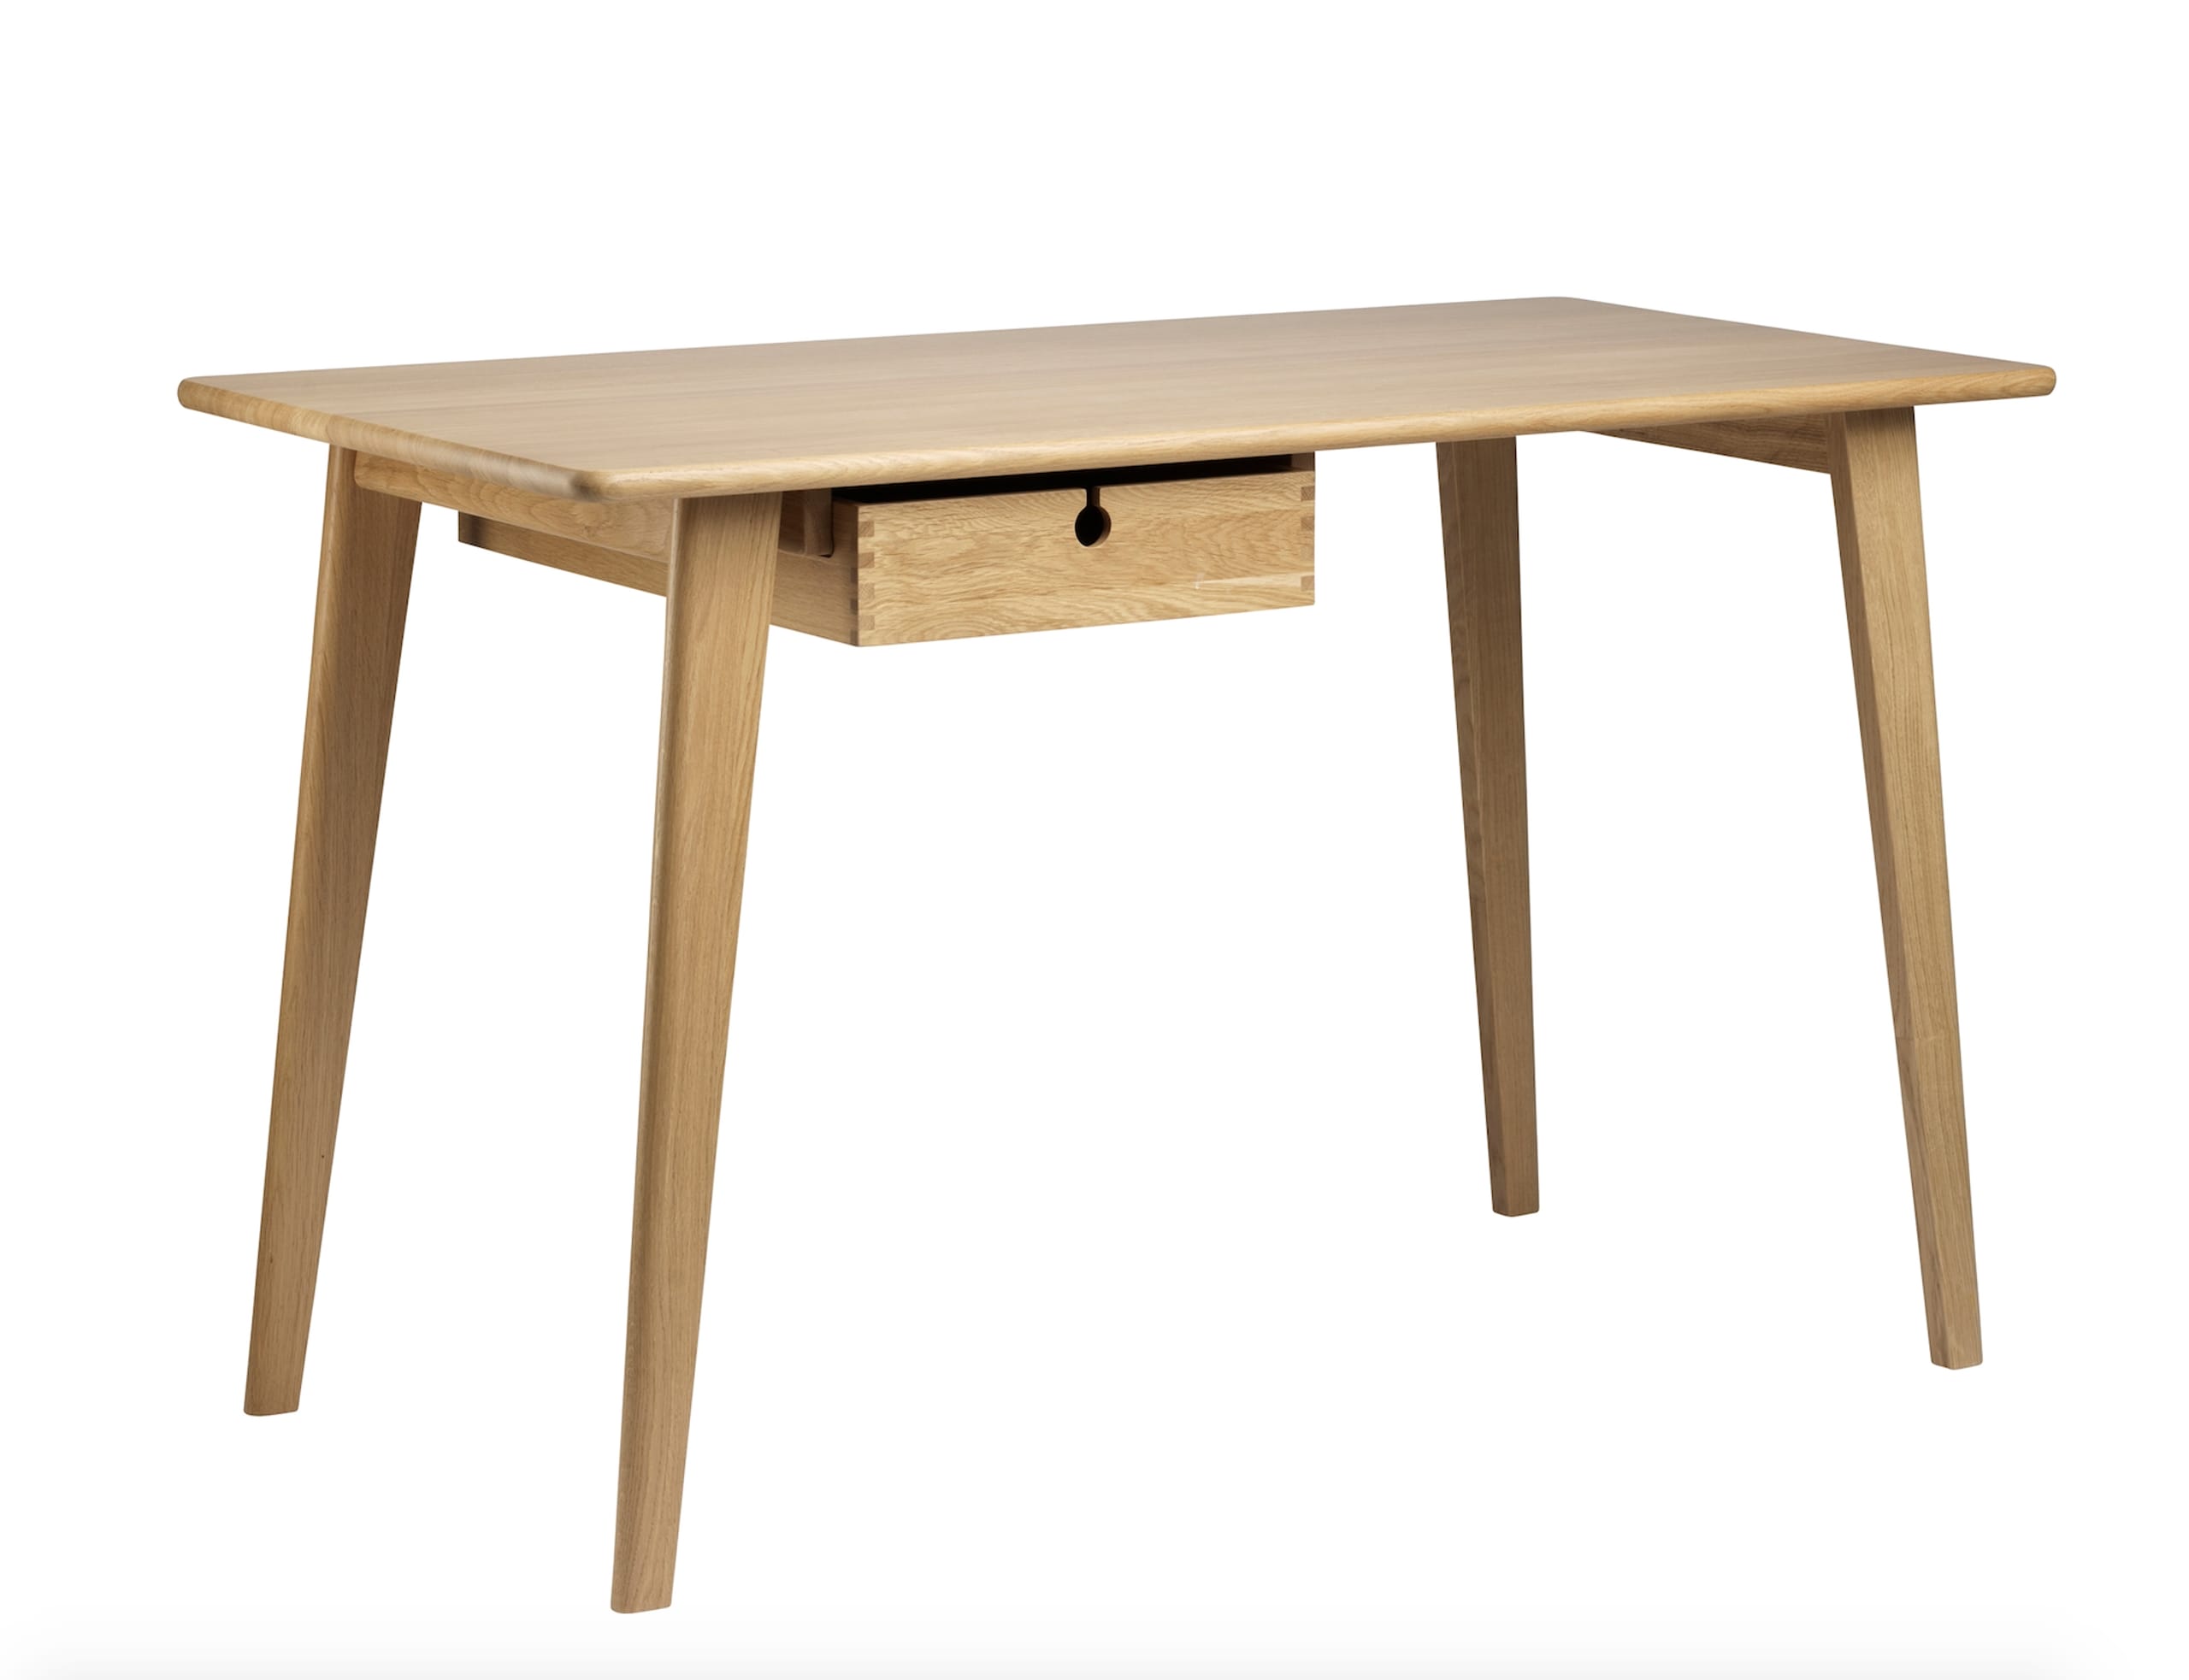 FDB Møbler / Furniture - Bureau - C67 by Foersom & Hiort-Lorenzen - Oak/Nature 113